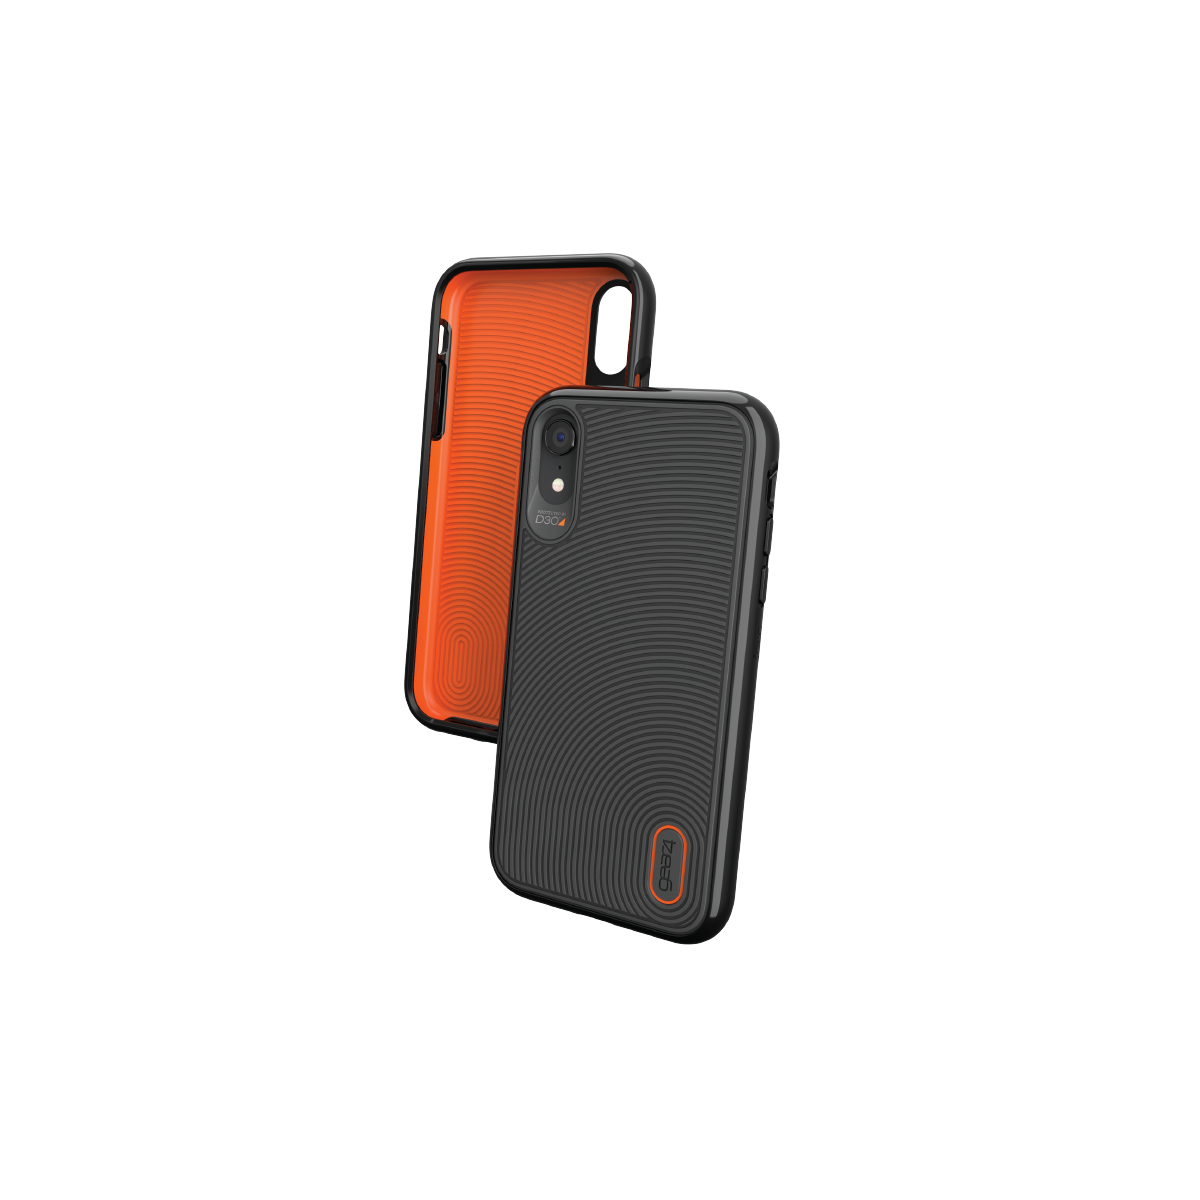 ốp lưng gear4 battersea d3o dành cho iphone - khả năng chống sốc 5m-tương thích với sạc không dây mà không cần tháo vỏ ốp - hàng chính hãng 1